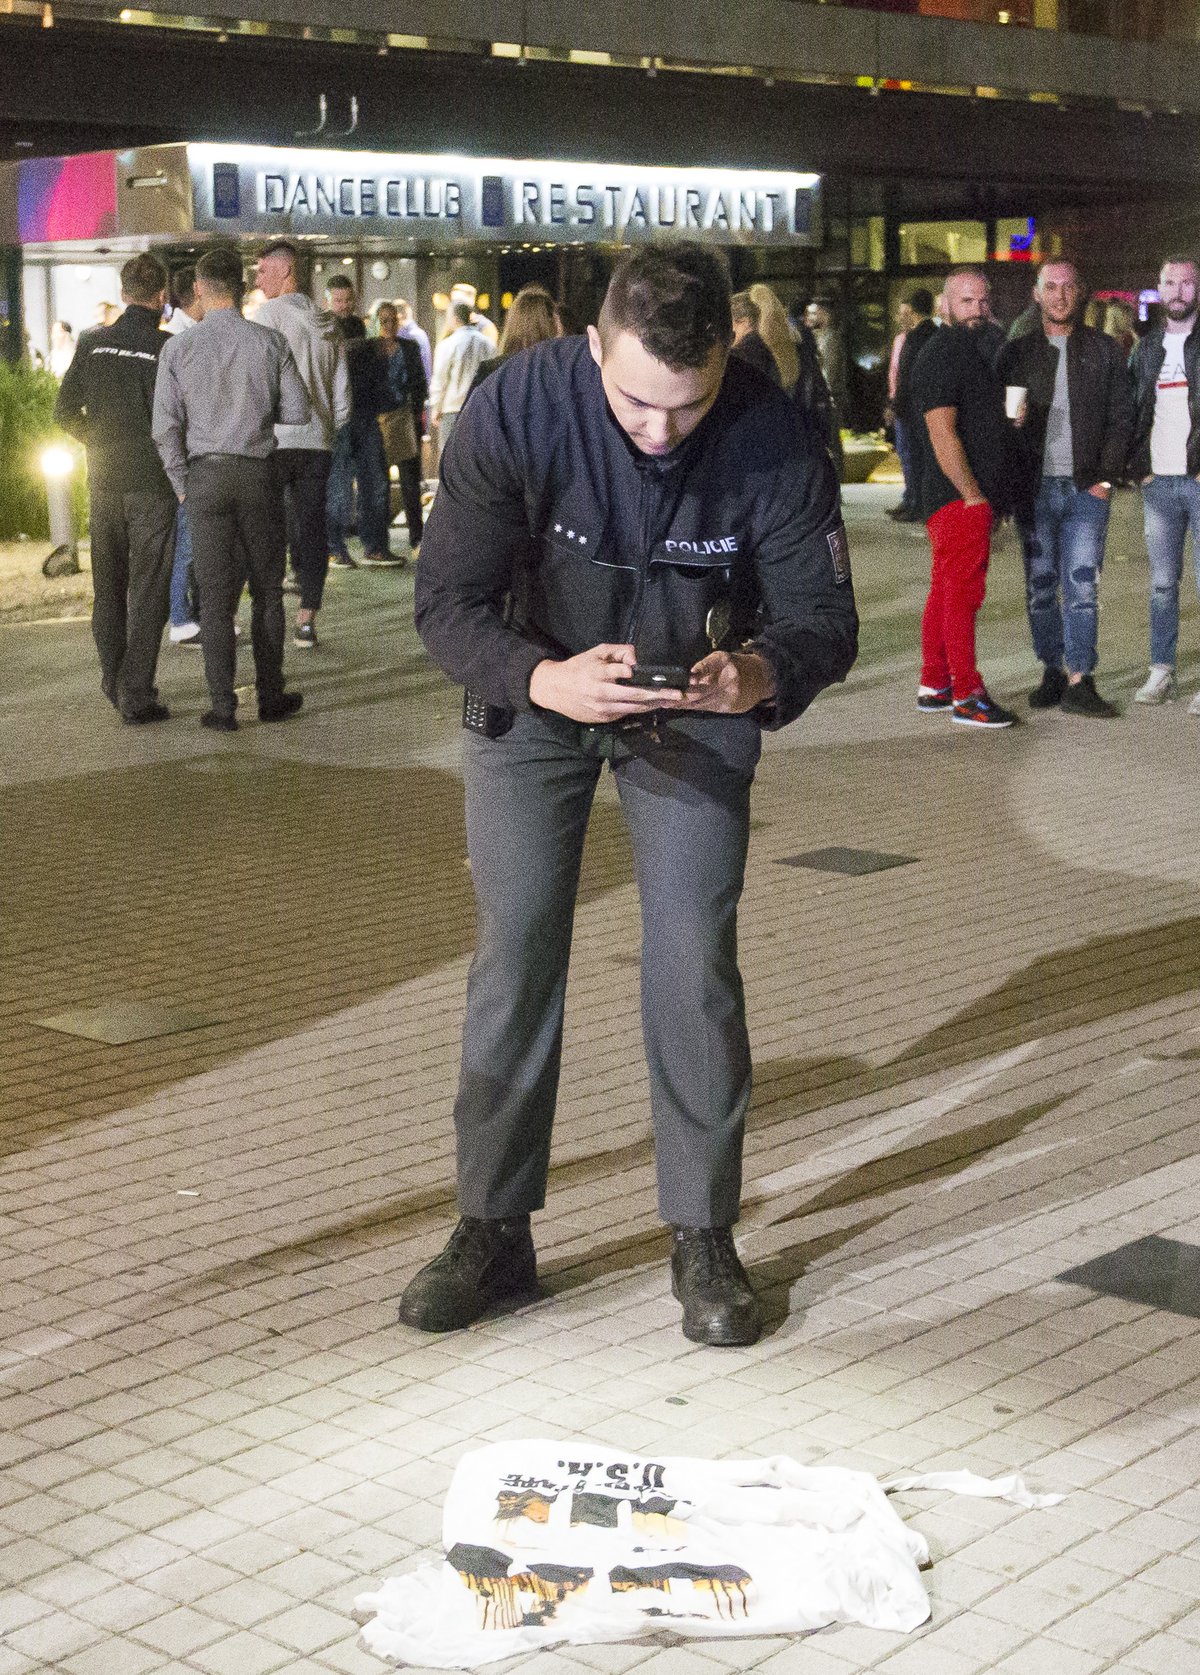 Před klubem Peklo v Karlových Varech se v noci strhla potyčka mezi návštěvníky a ochrankou. Na místě zasahovali policisté, několik lidí bylo zraněno